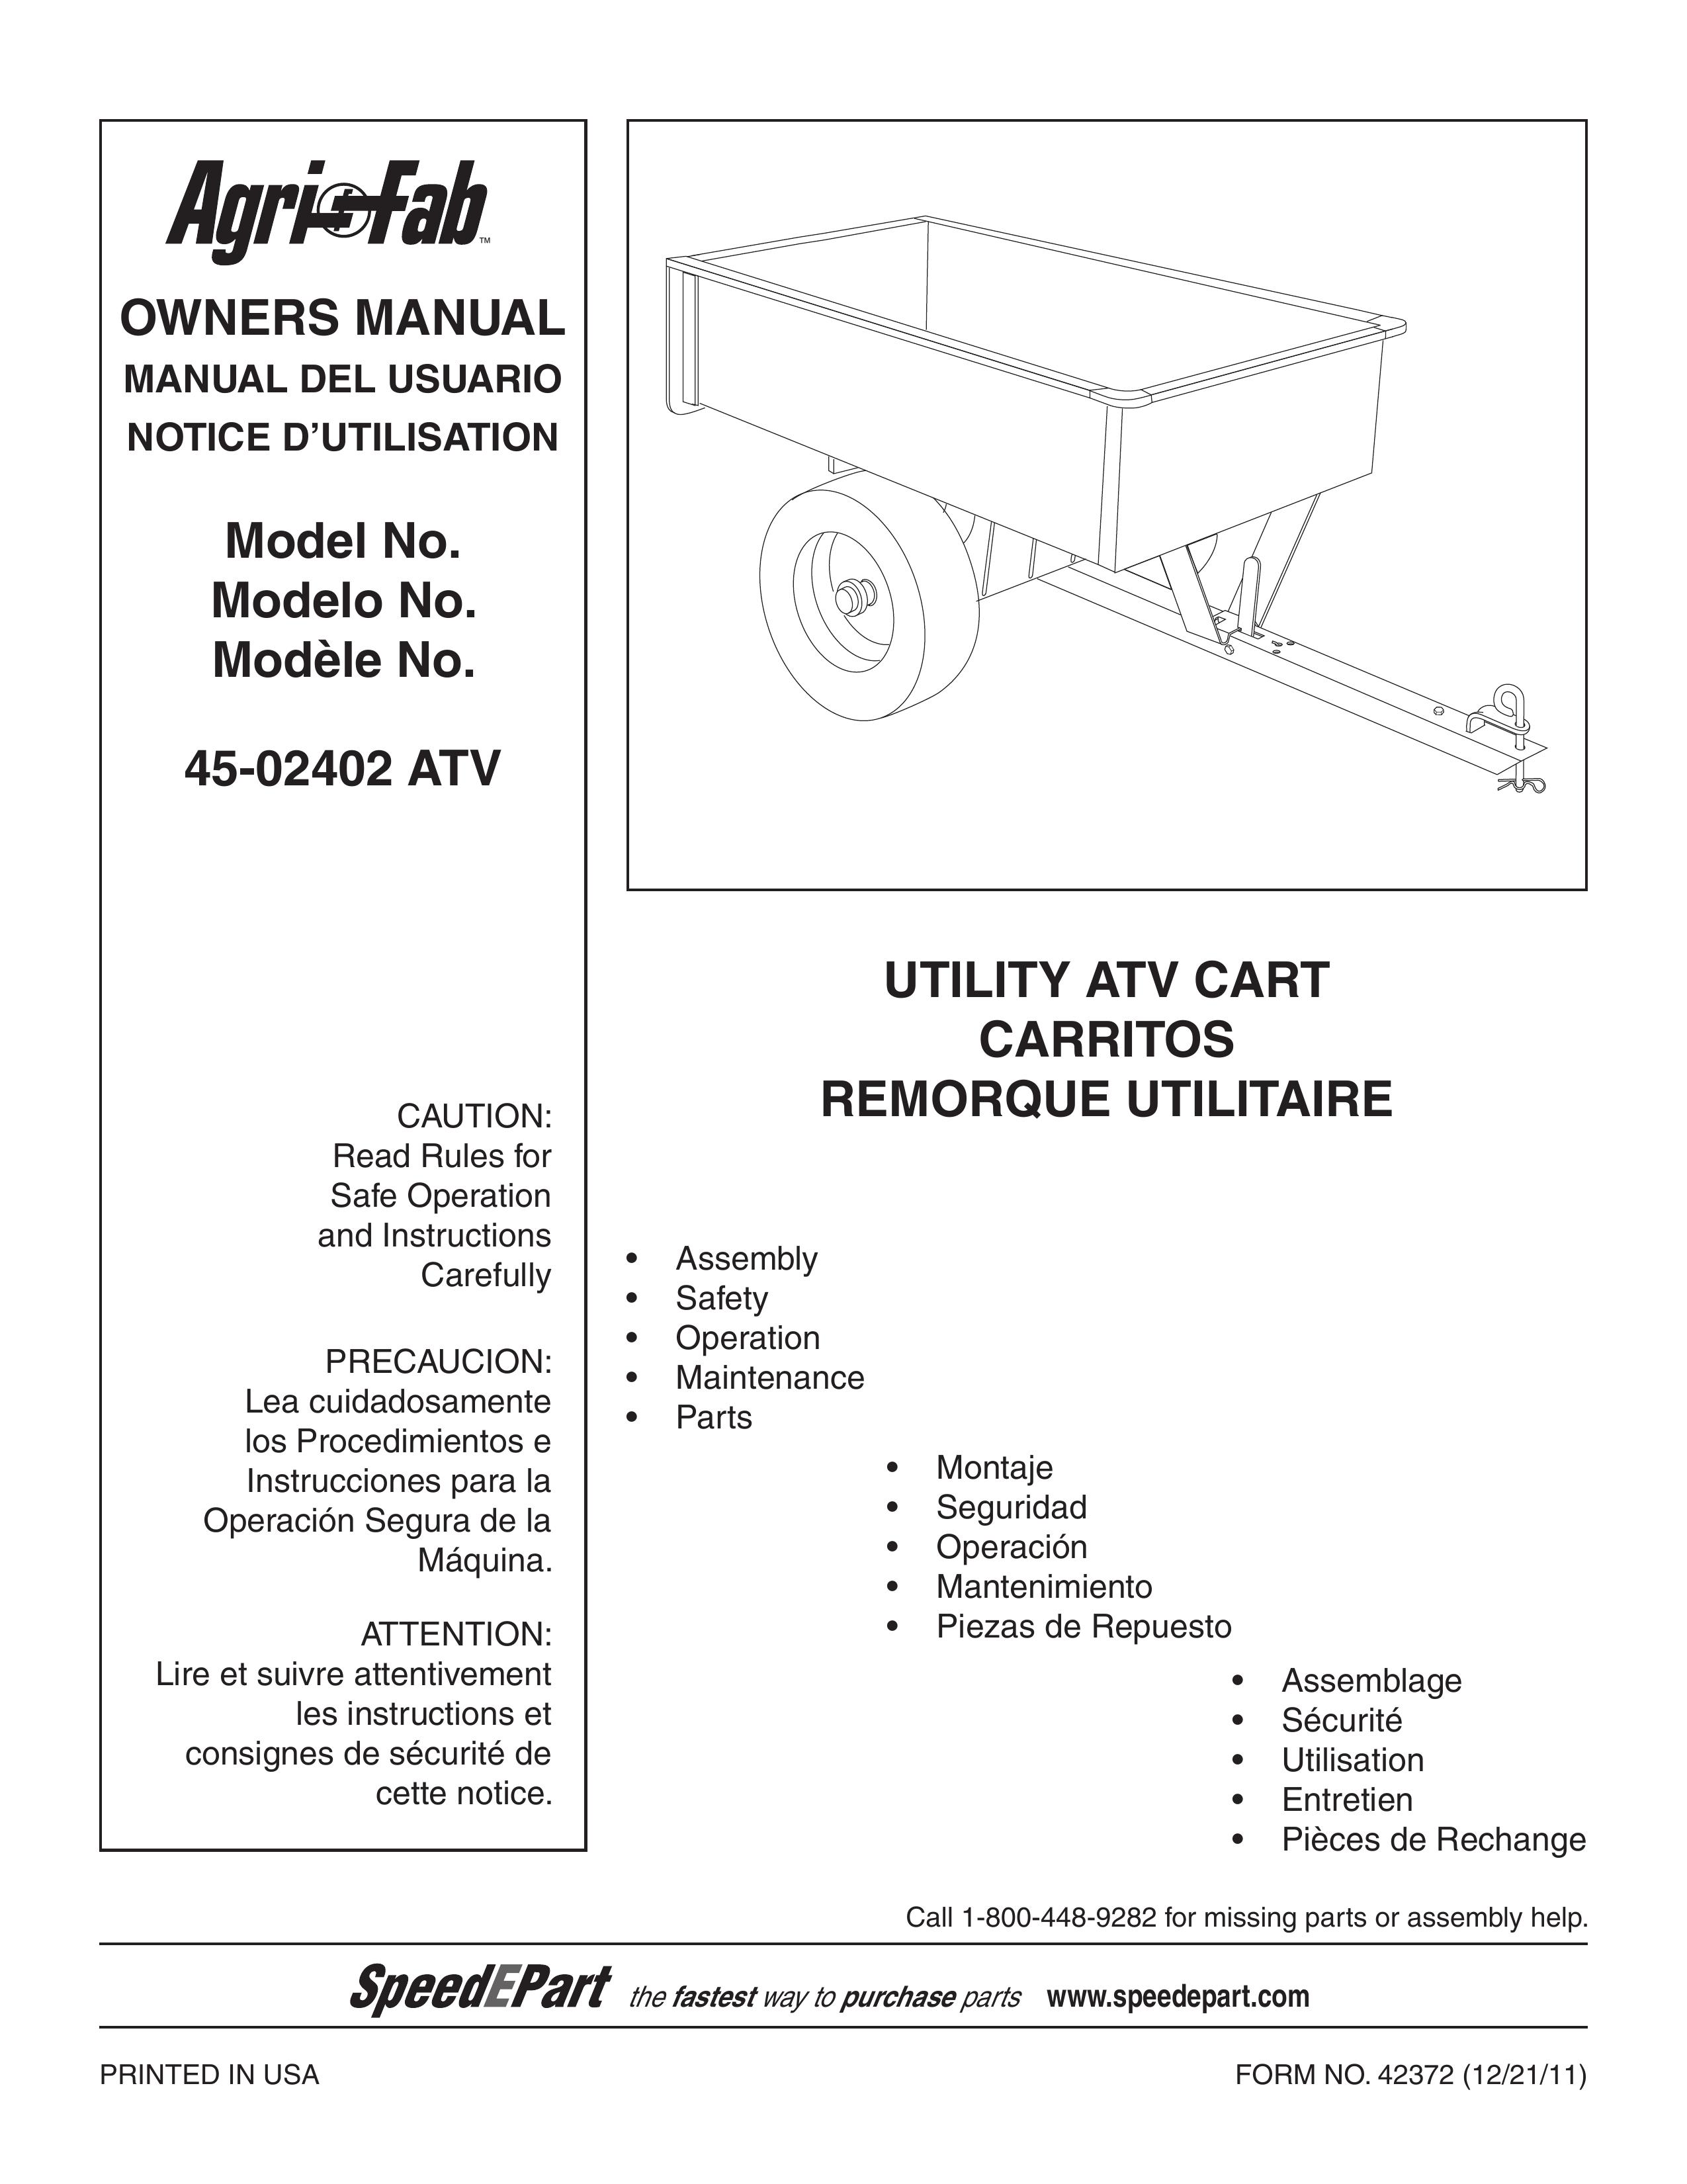 Agri-Fab 45-02402 ATV Outdoor Cart User Manual